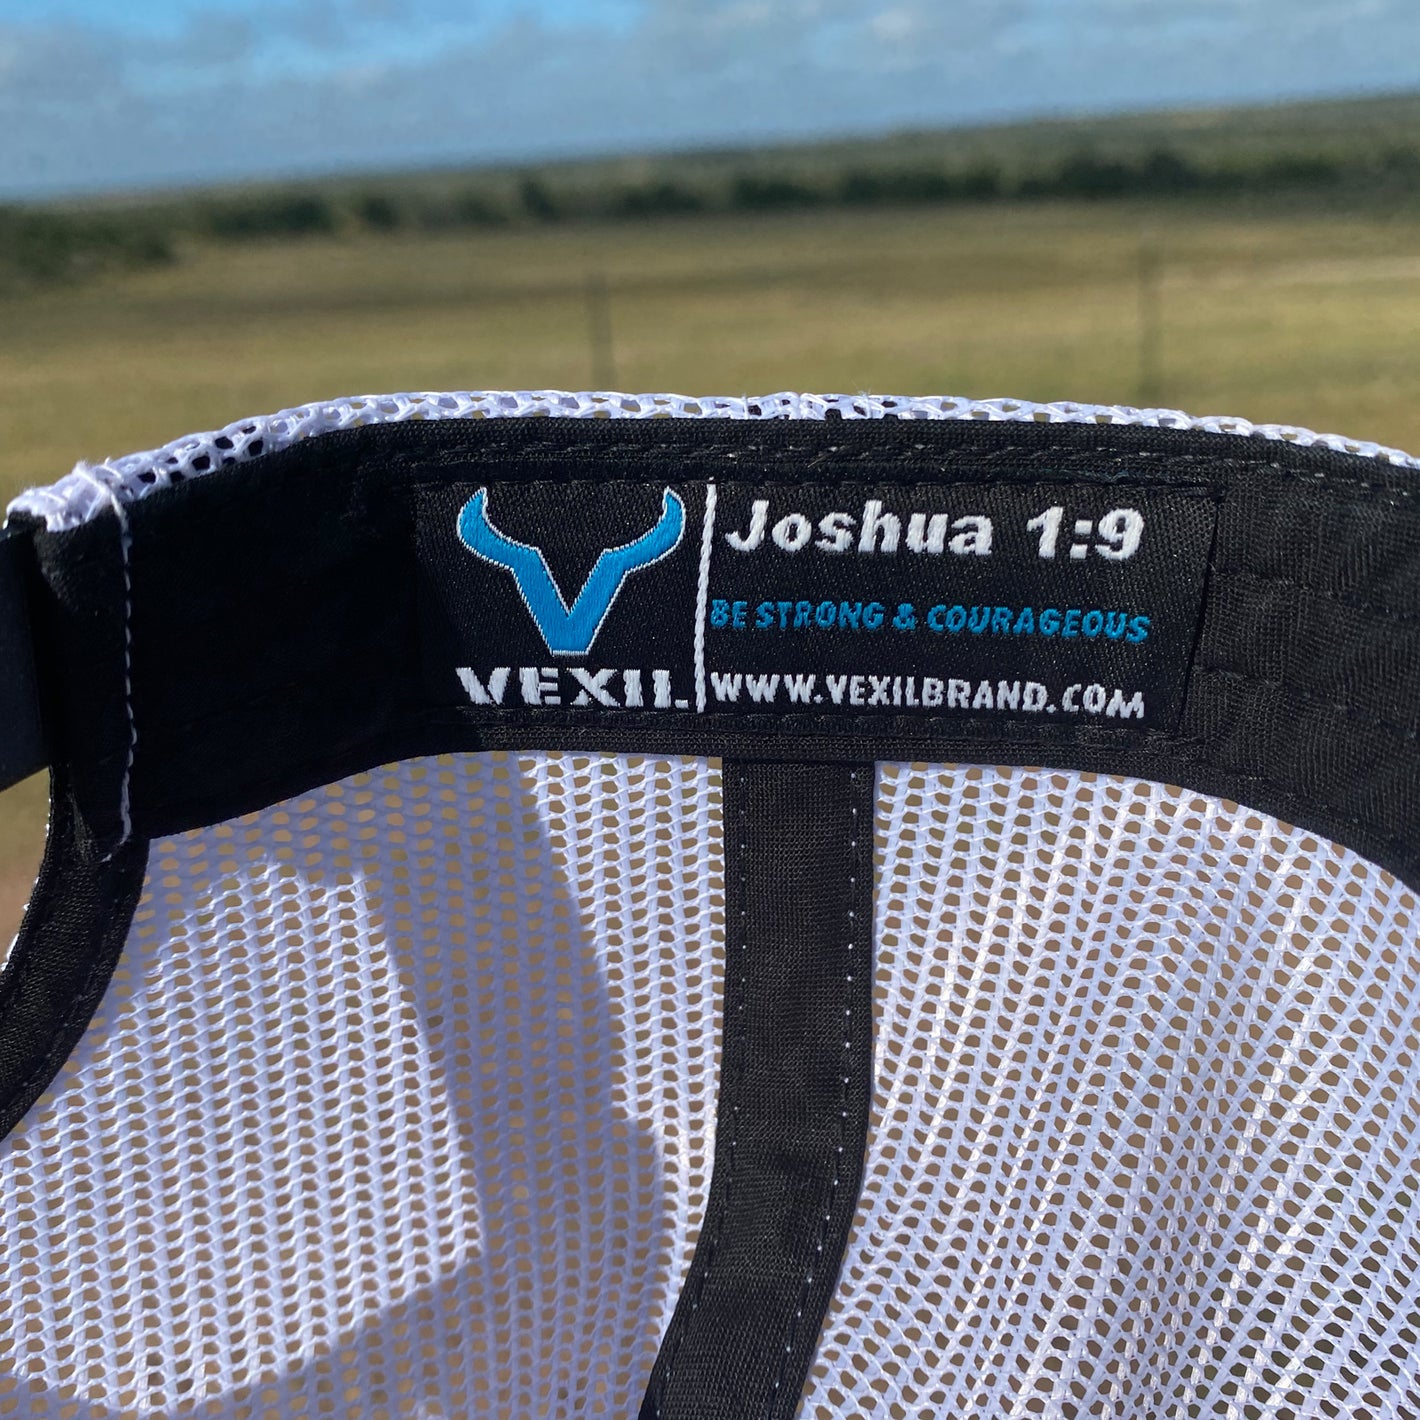 Vexil Brand - Joshua 1:9